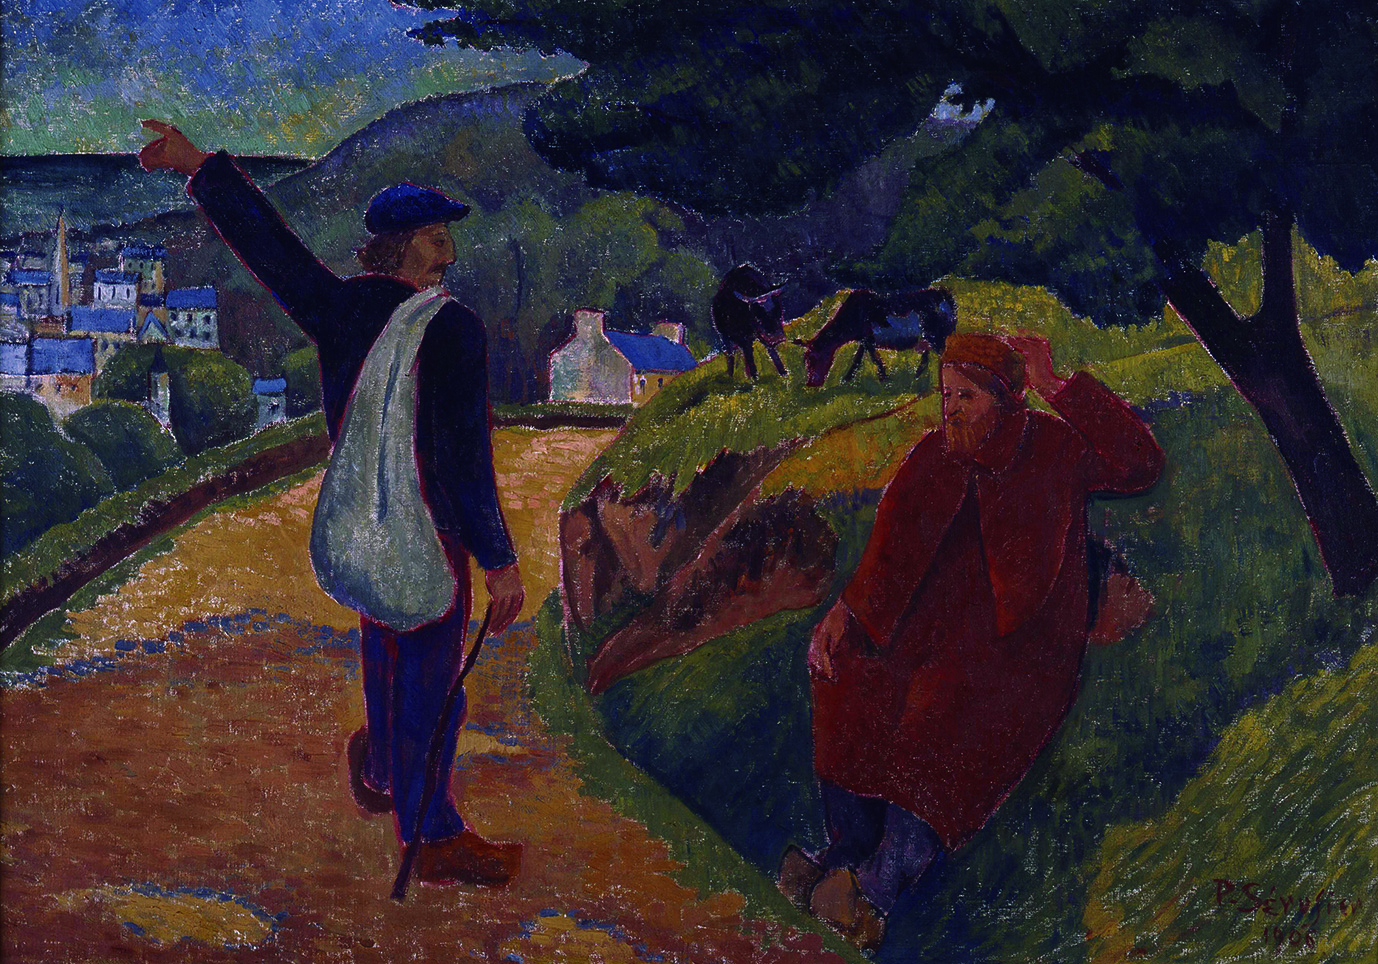 ポール・セリュジエ《さようなら、ゴーギャン》 1906年 カンペール美術館 Collection du musee des beaux-arts de Quimper, France